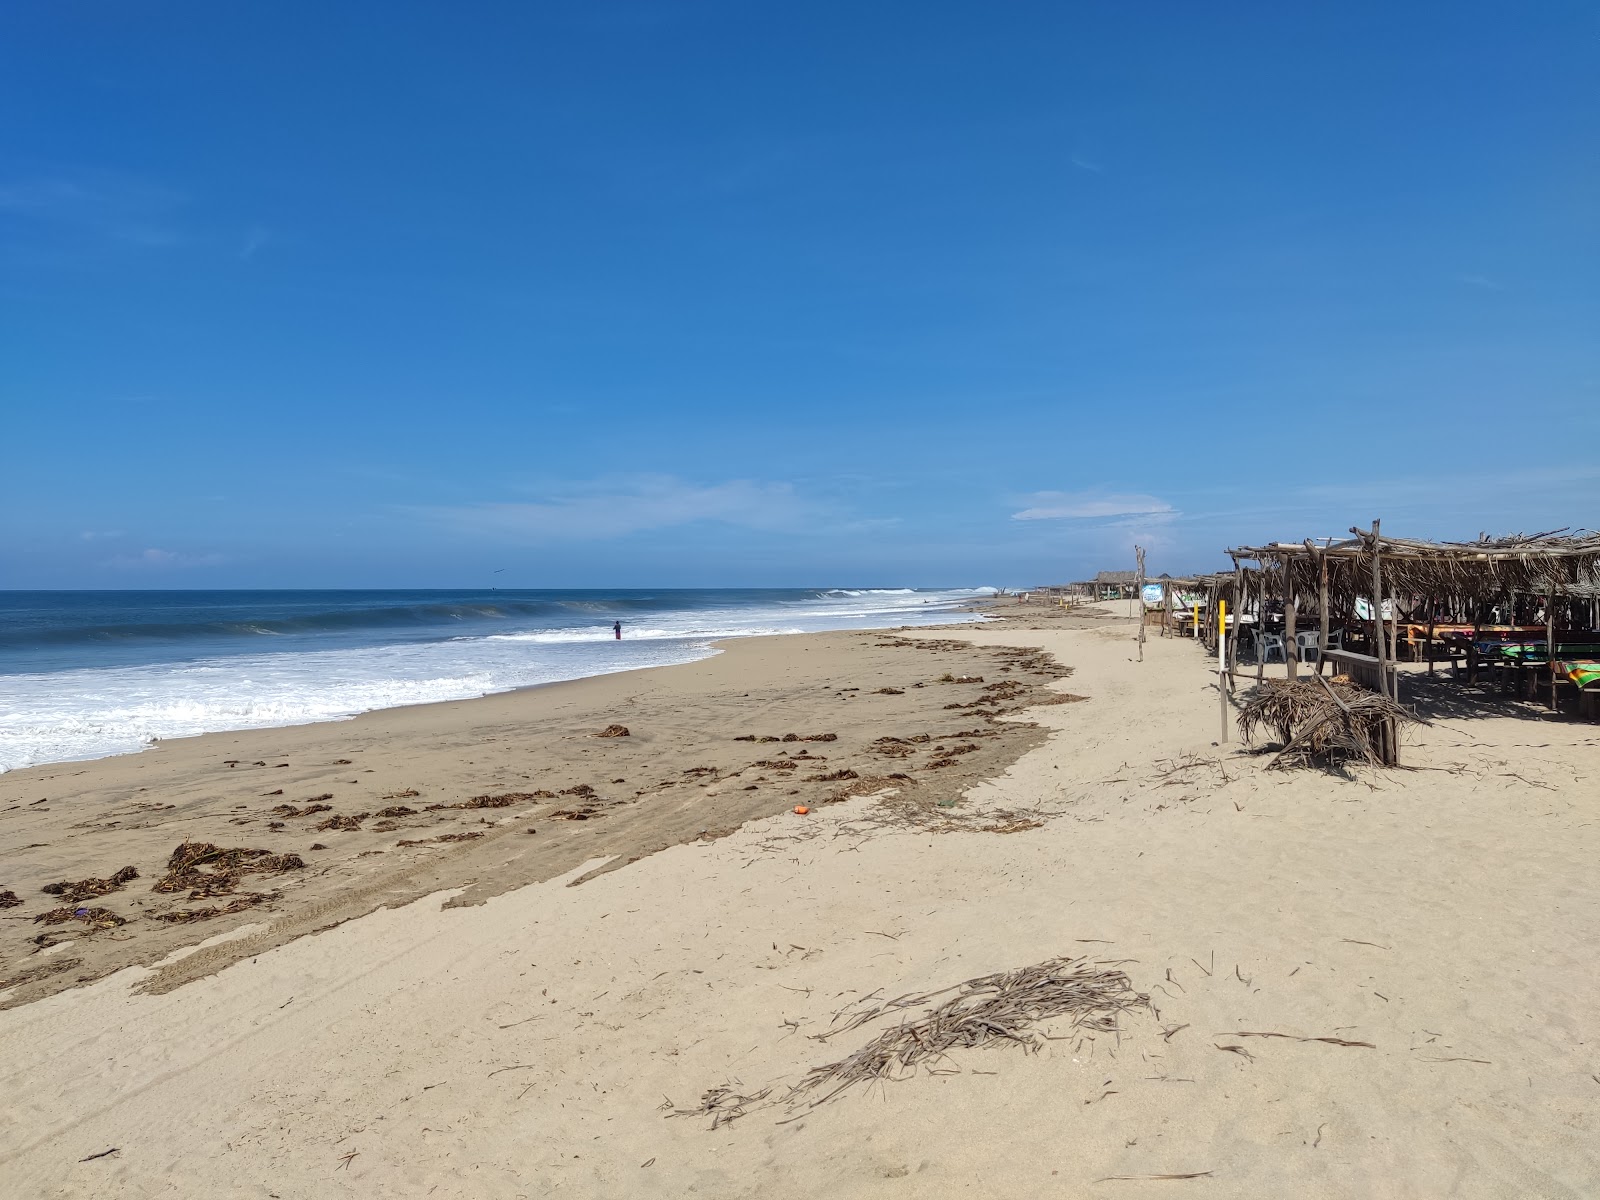 Playa Barra de Coyuca'in fotoğrafı parlak kum yüzey ile